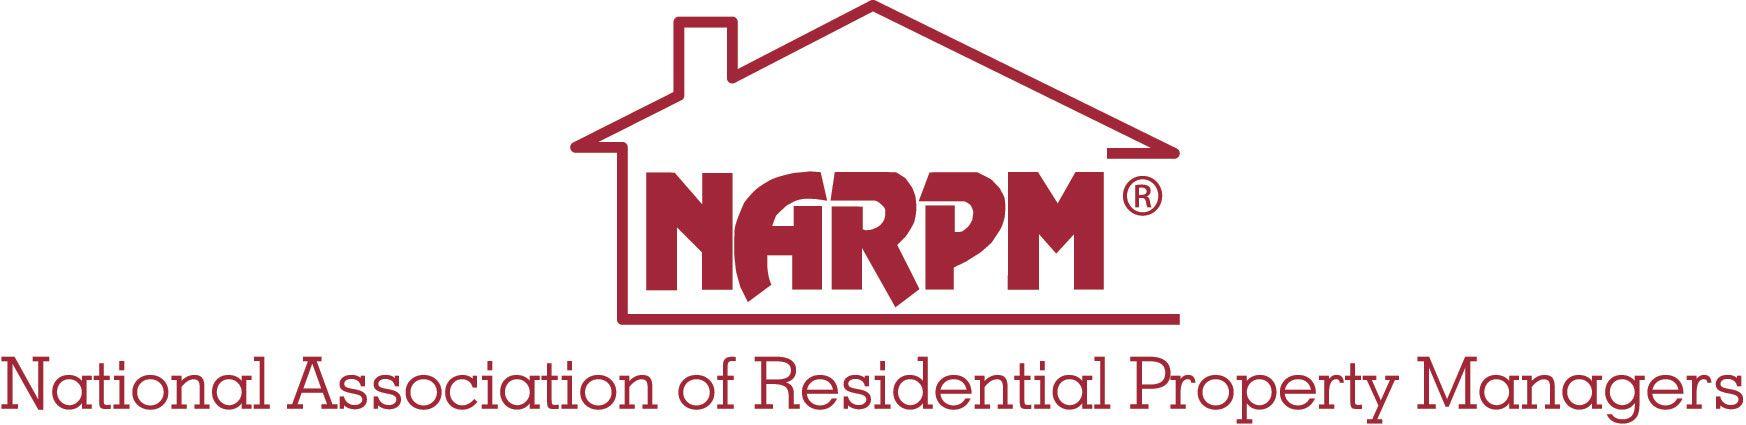 Narpm Logo - Why Use a NARPM® Member?